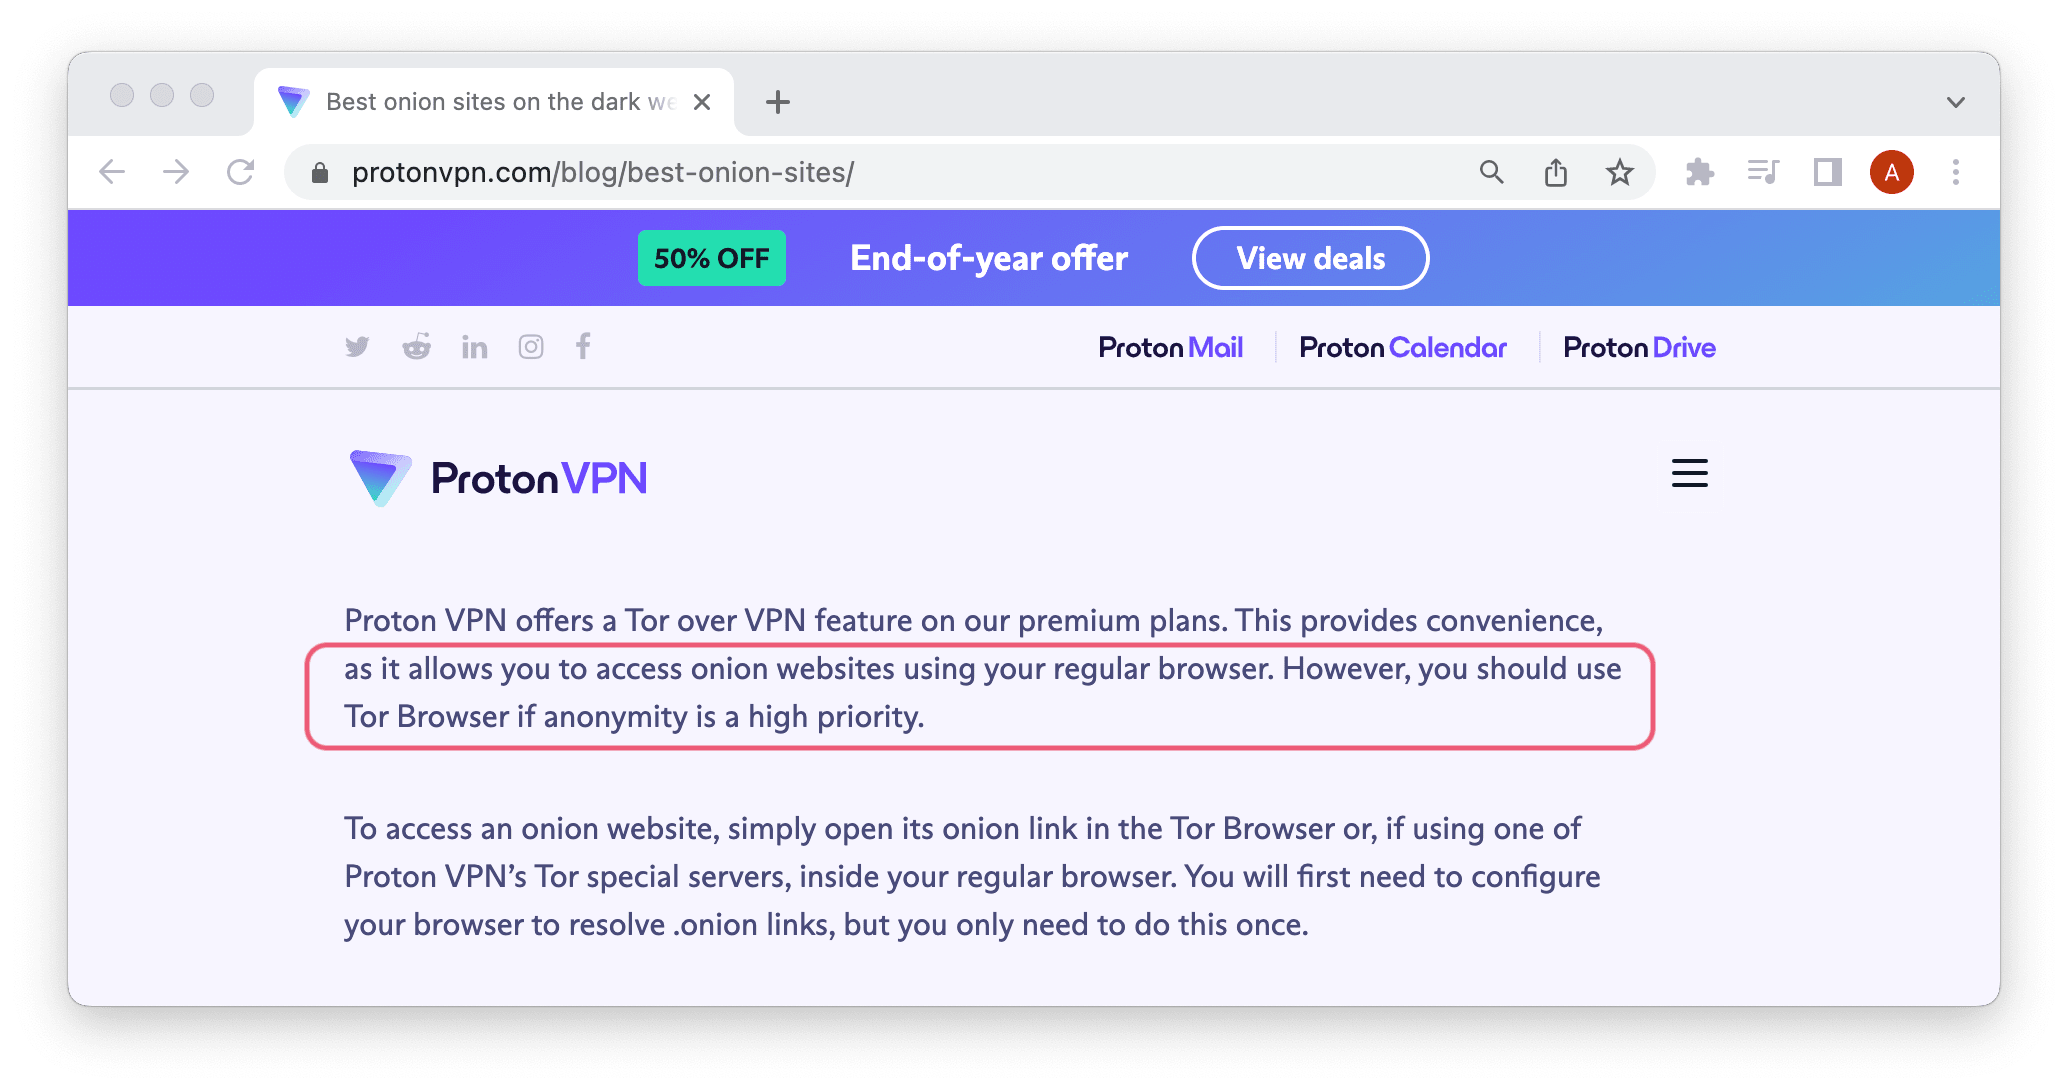 Proton VPN partage ouvertement qu'un navigateur normal (et son serveur Tor over VPN) ne fait pas le poids face au navigateur Tor en termes d'anonymat.